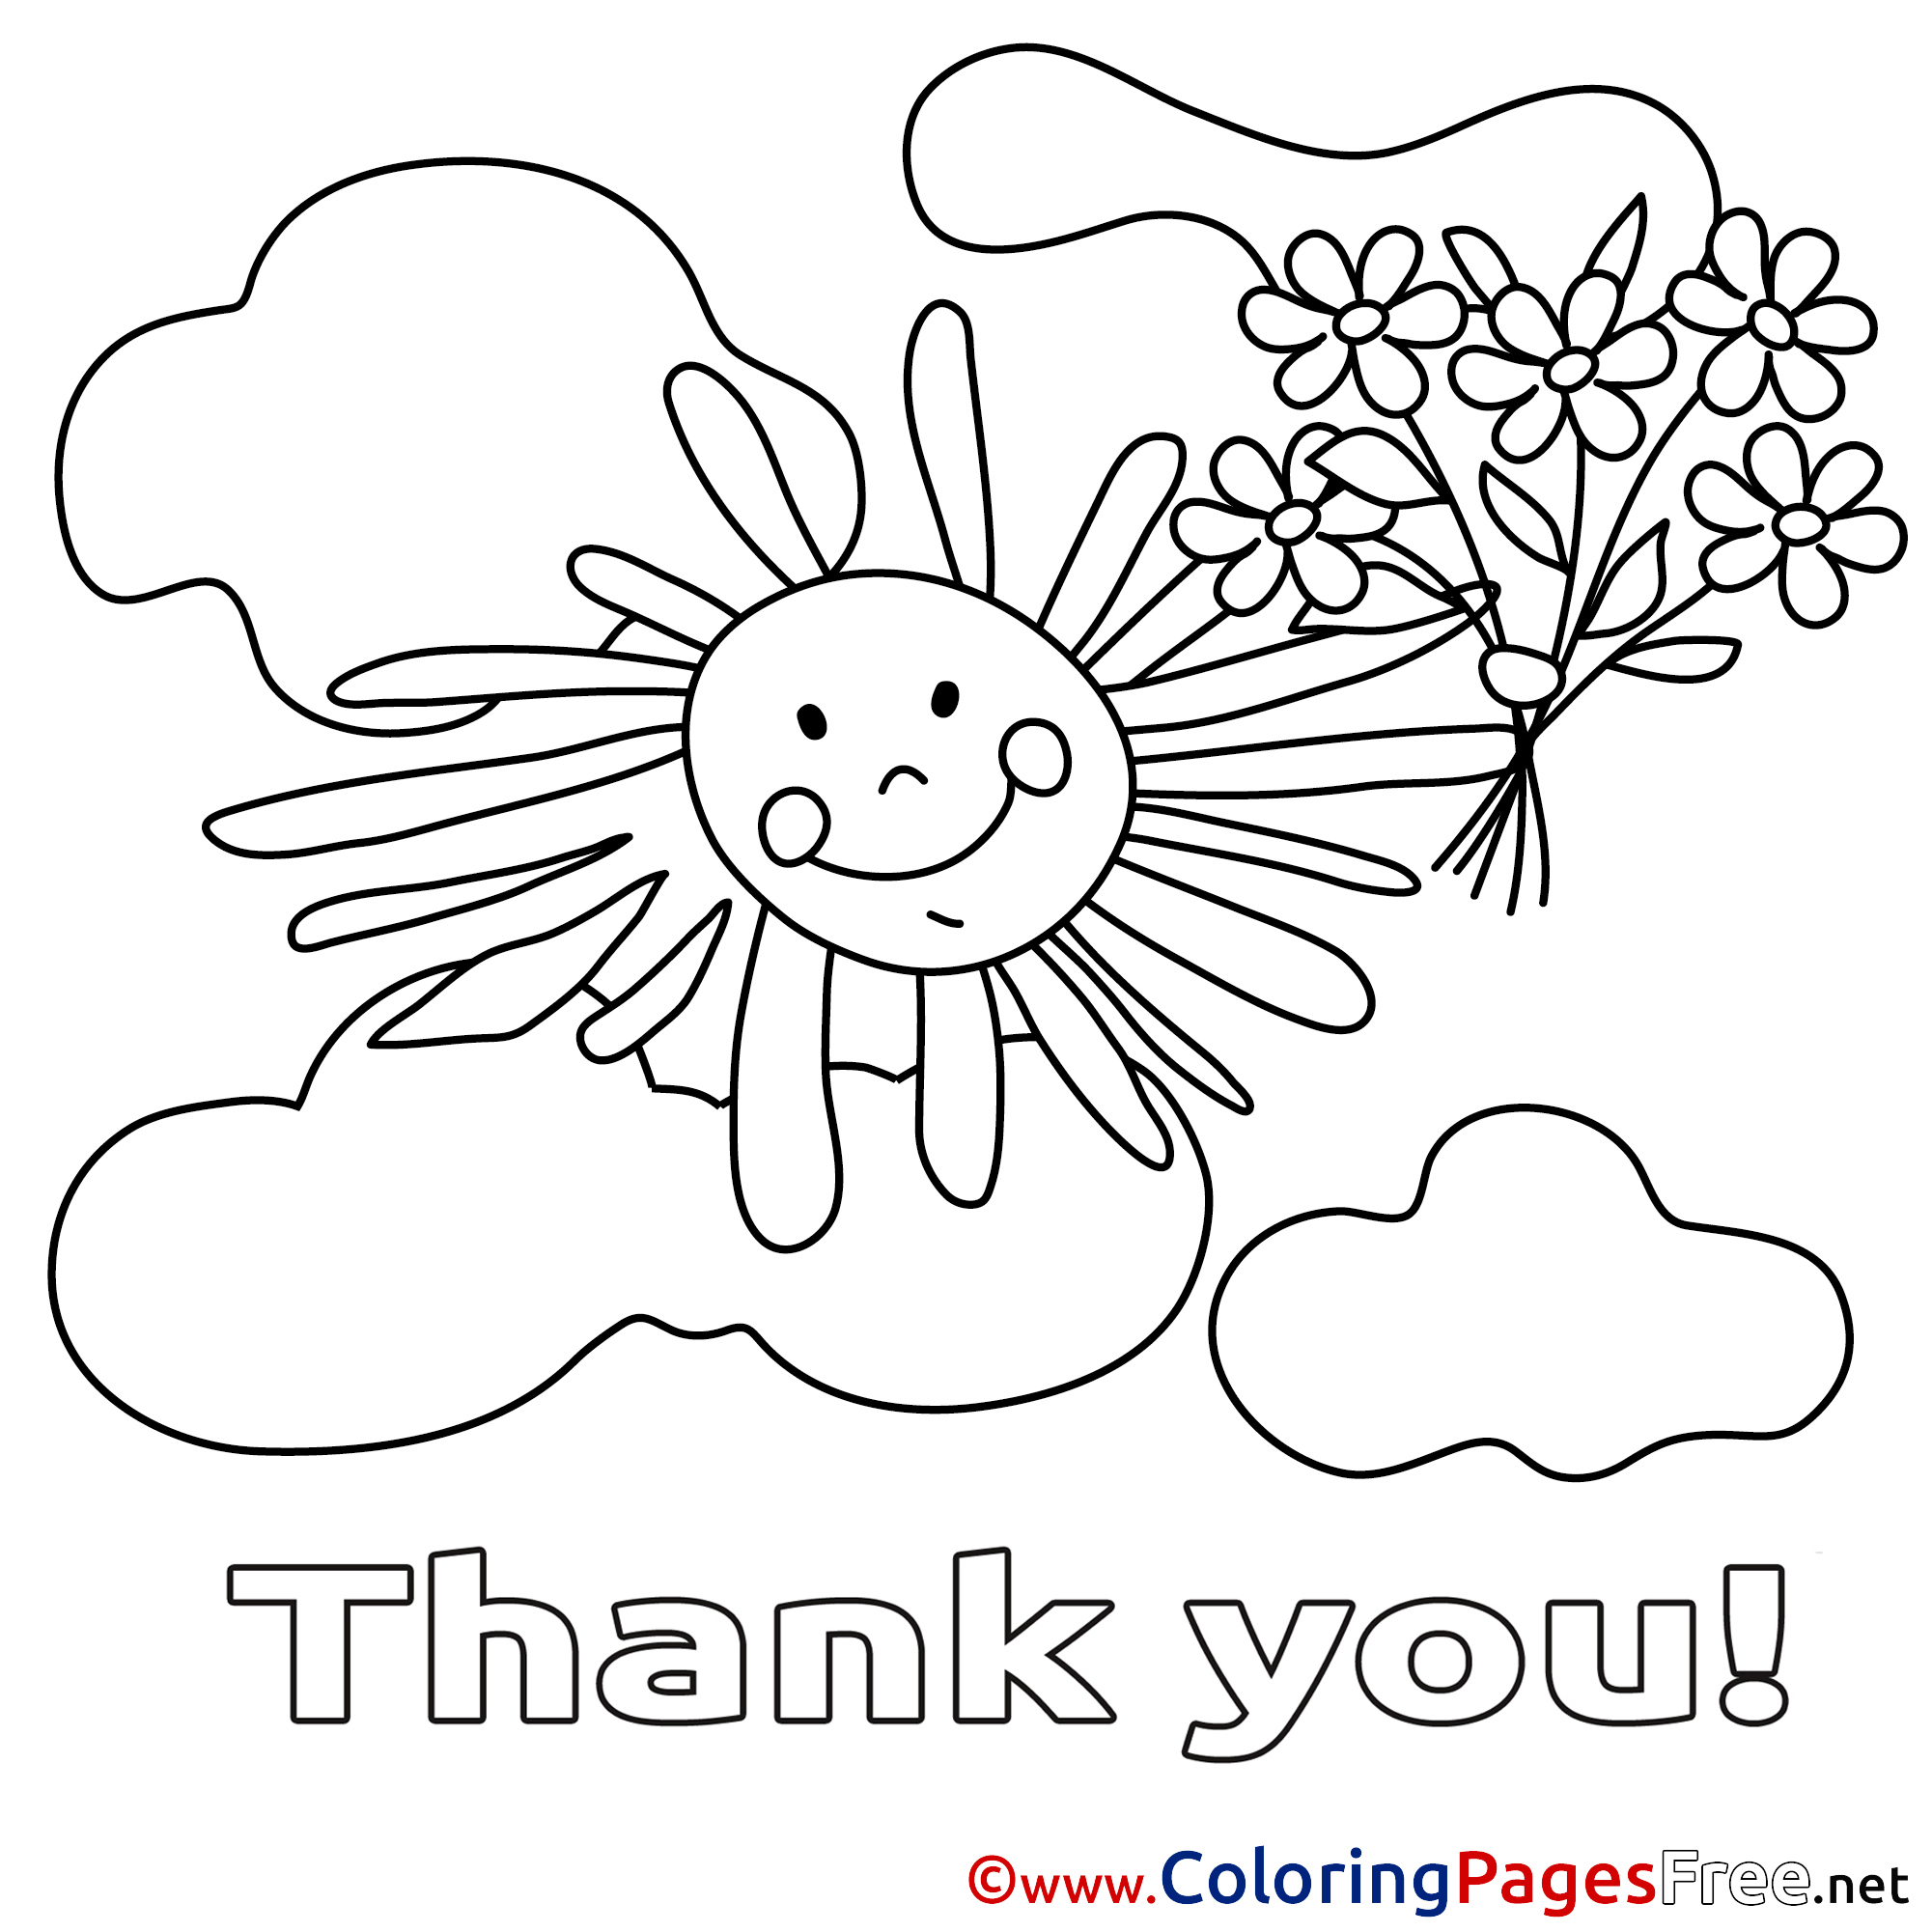 День благодарности раскраска. Всемирный день спасибо раскраски. День благодарности раскраска для детей. Рисунок благодарность раскраска. День спасибо раскраски для детей.